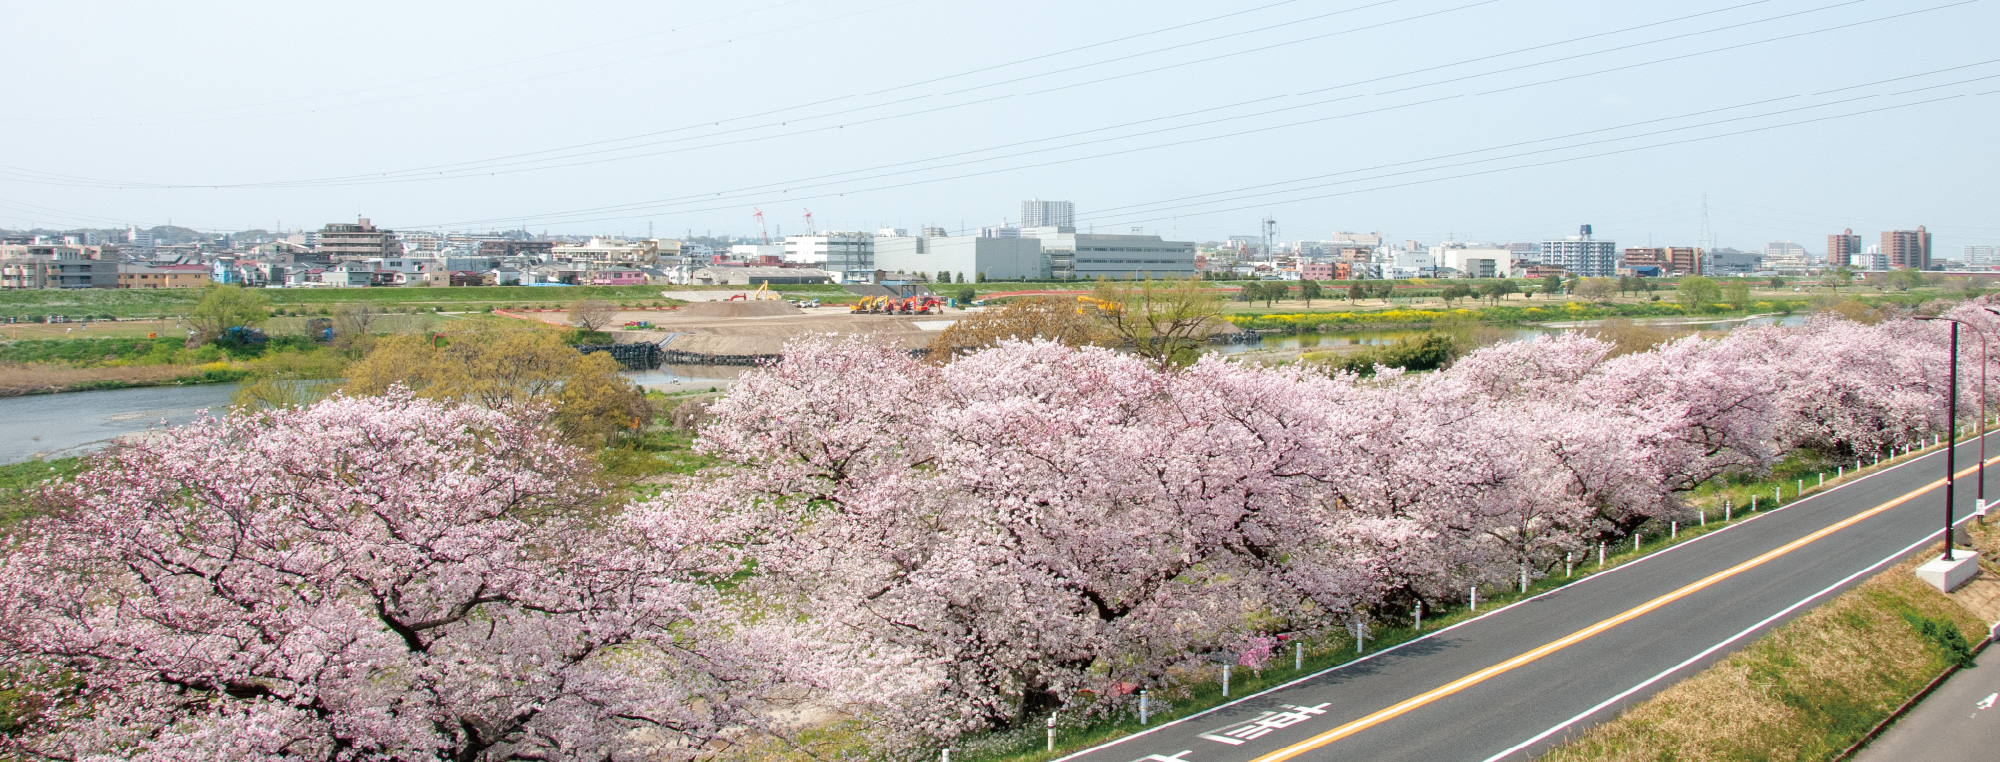 多摩川沿いに咲き誇るサクラ並木